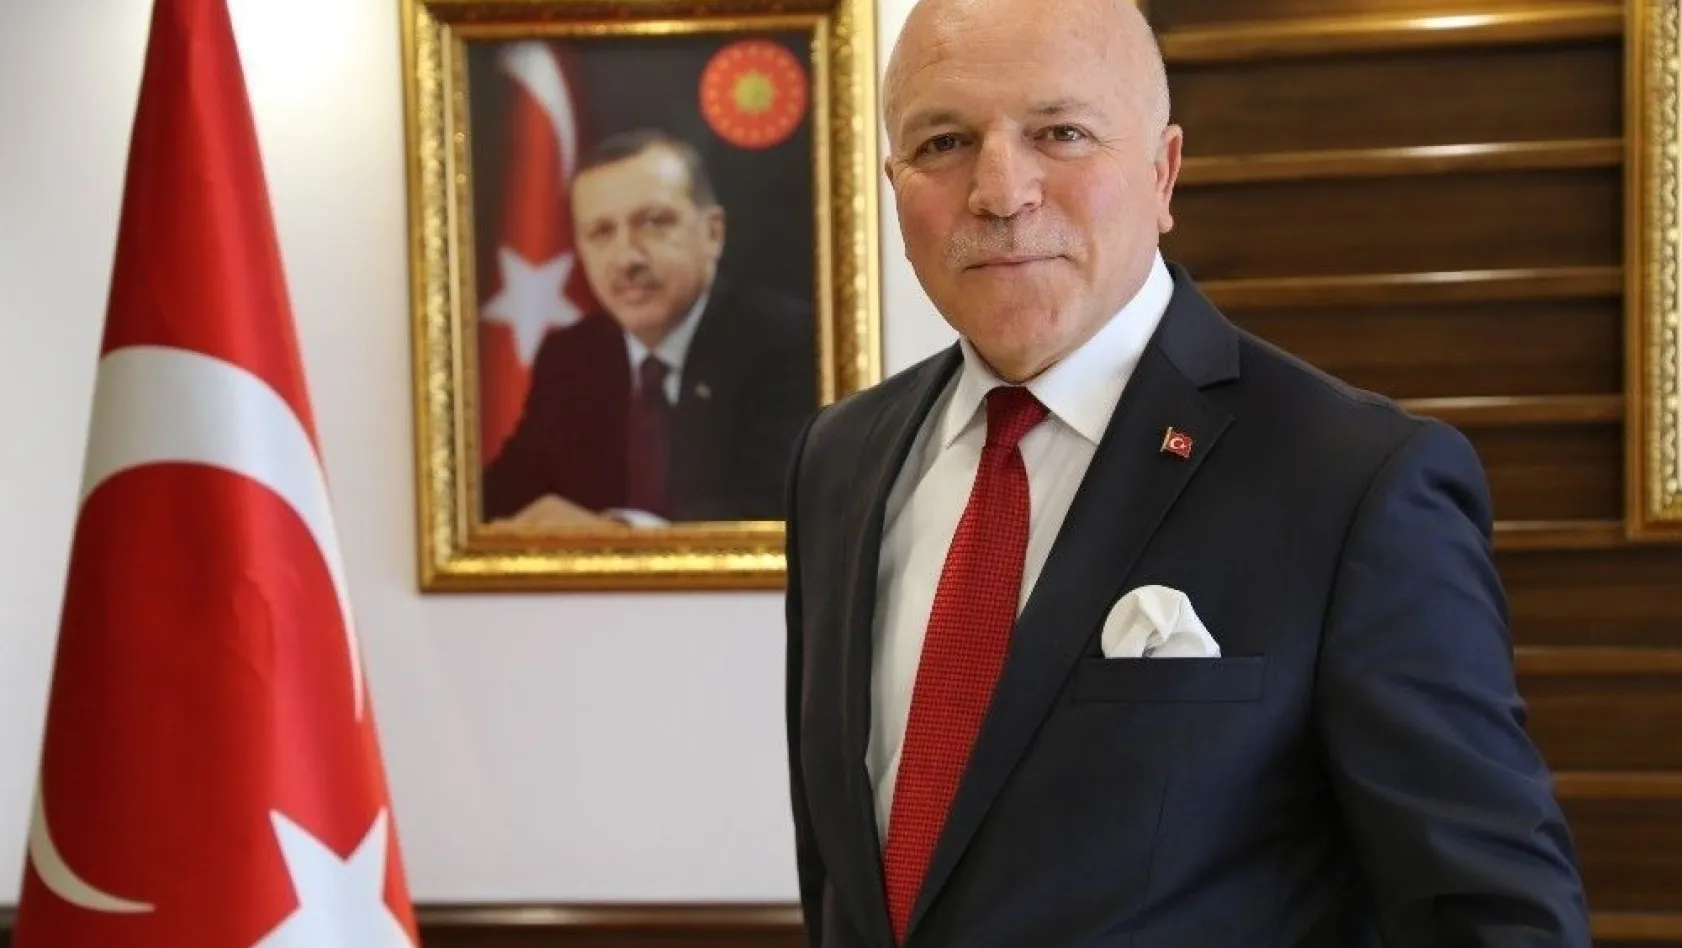 Başkan Sekmen: '2019 Erzurum'un şahlanış yılı olacak'
